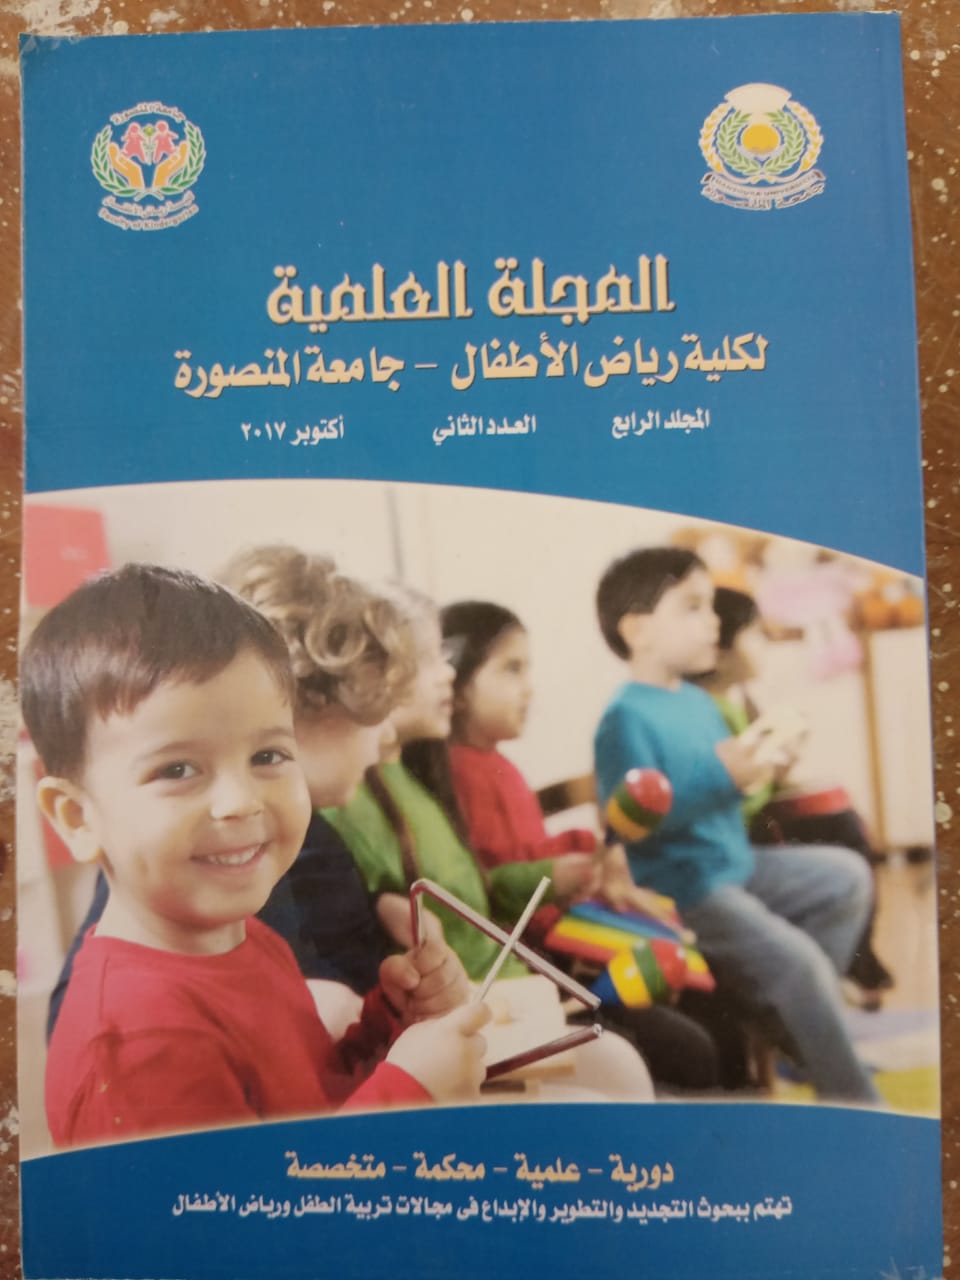 المجلة العلمية لکلية التربية للطفولة المبکرة – جامعة المنصورة